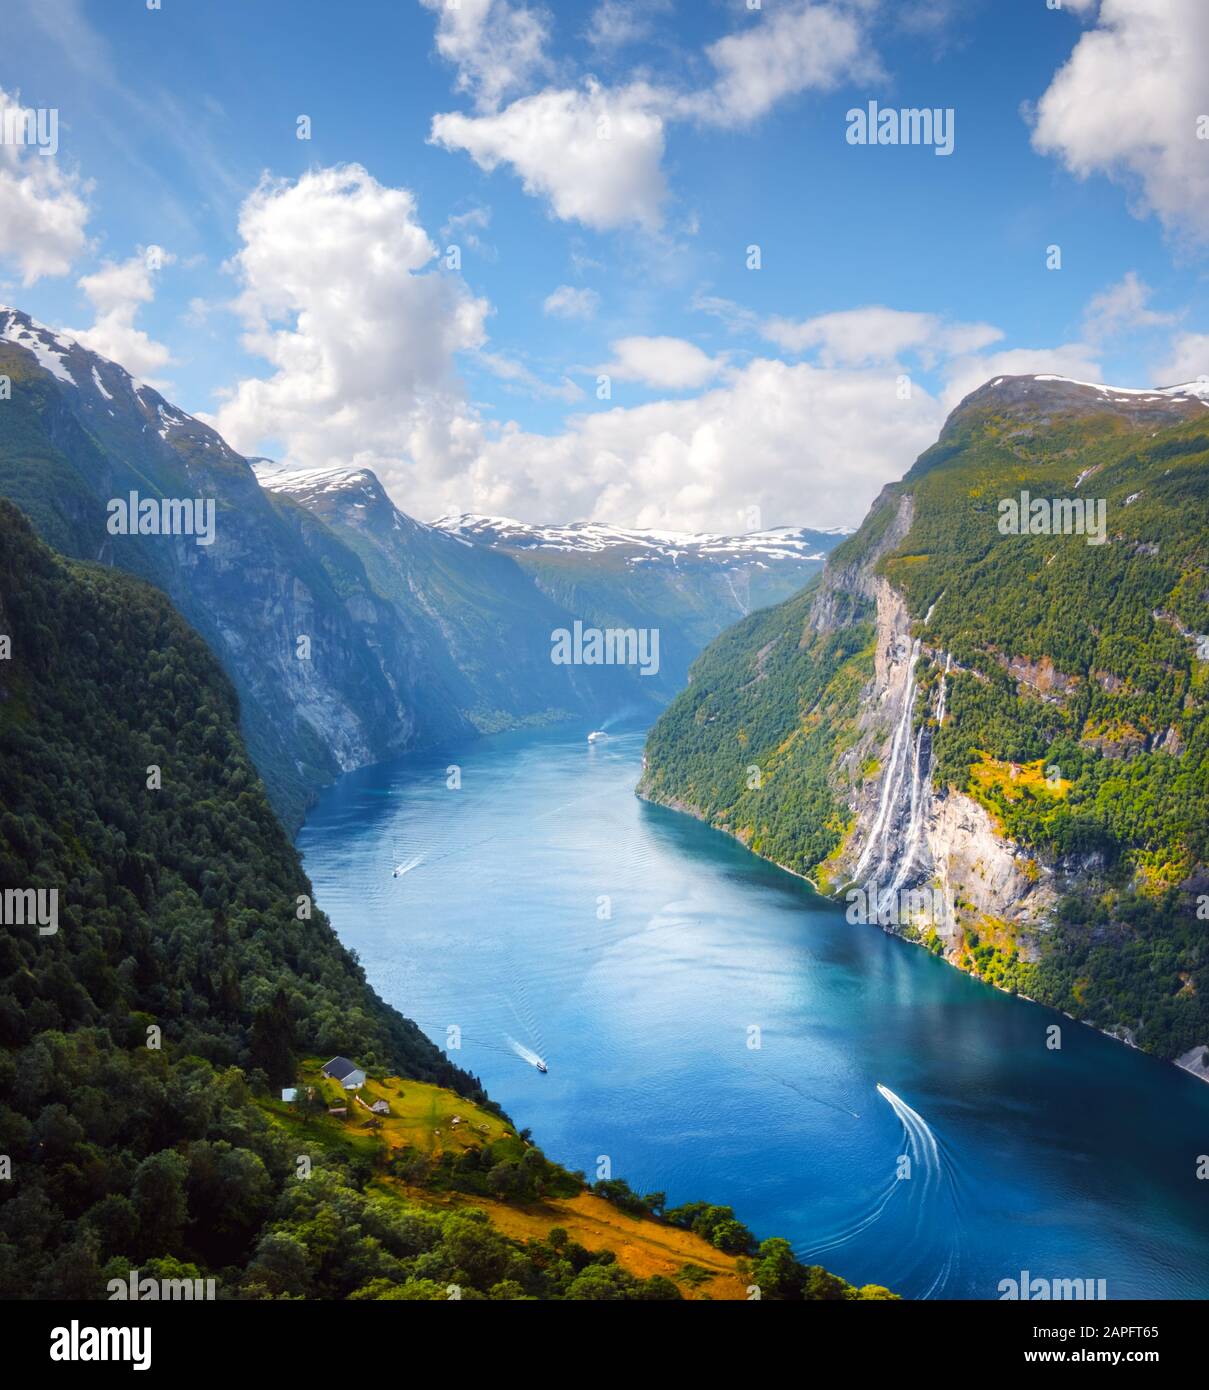 Impresionantes vistas del fiordo Sunnylvsfjorden y las famosas cascadas de Seven Sisters, cerca del pueblo Geiranger en el oeste de Noruega. Fotografía de paisajes Foto de stock